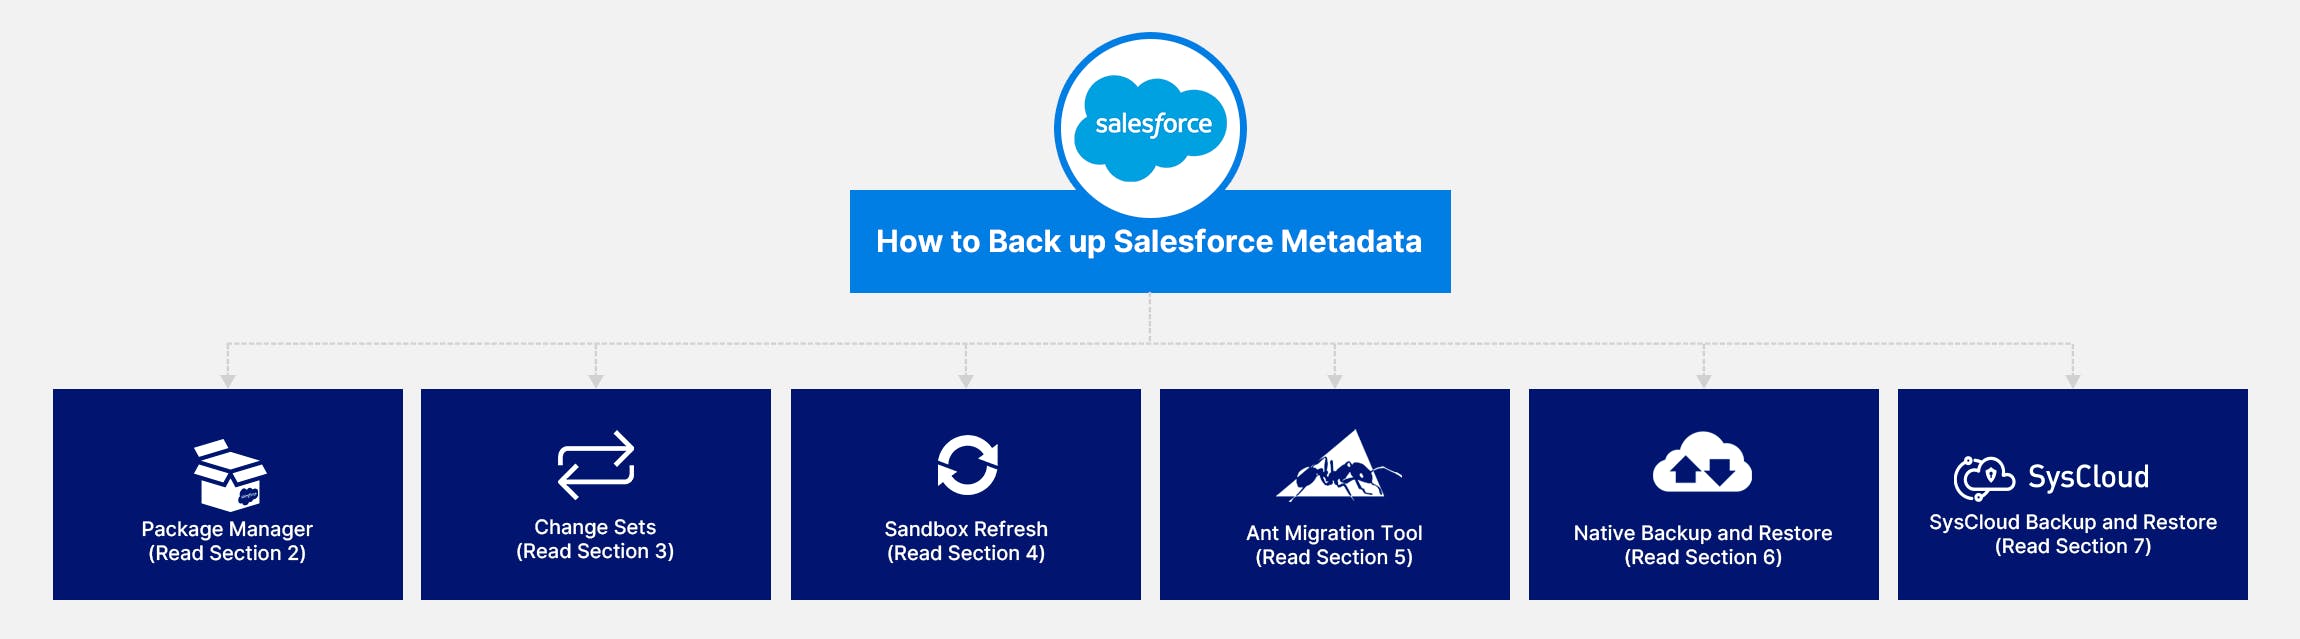 Salesforce metadata backup